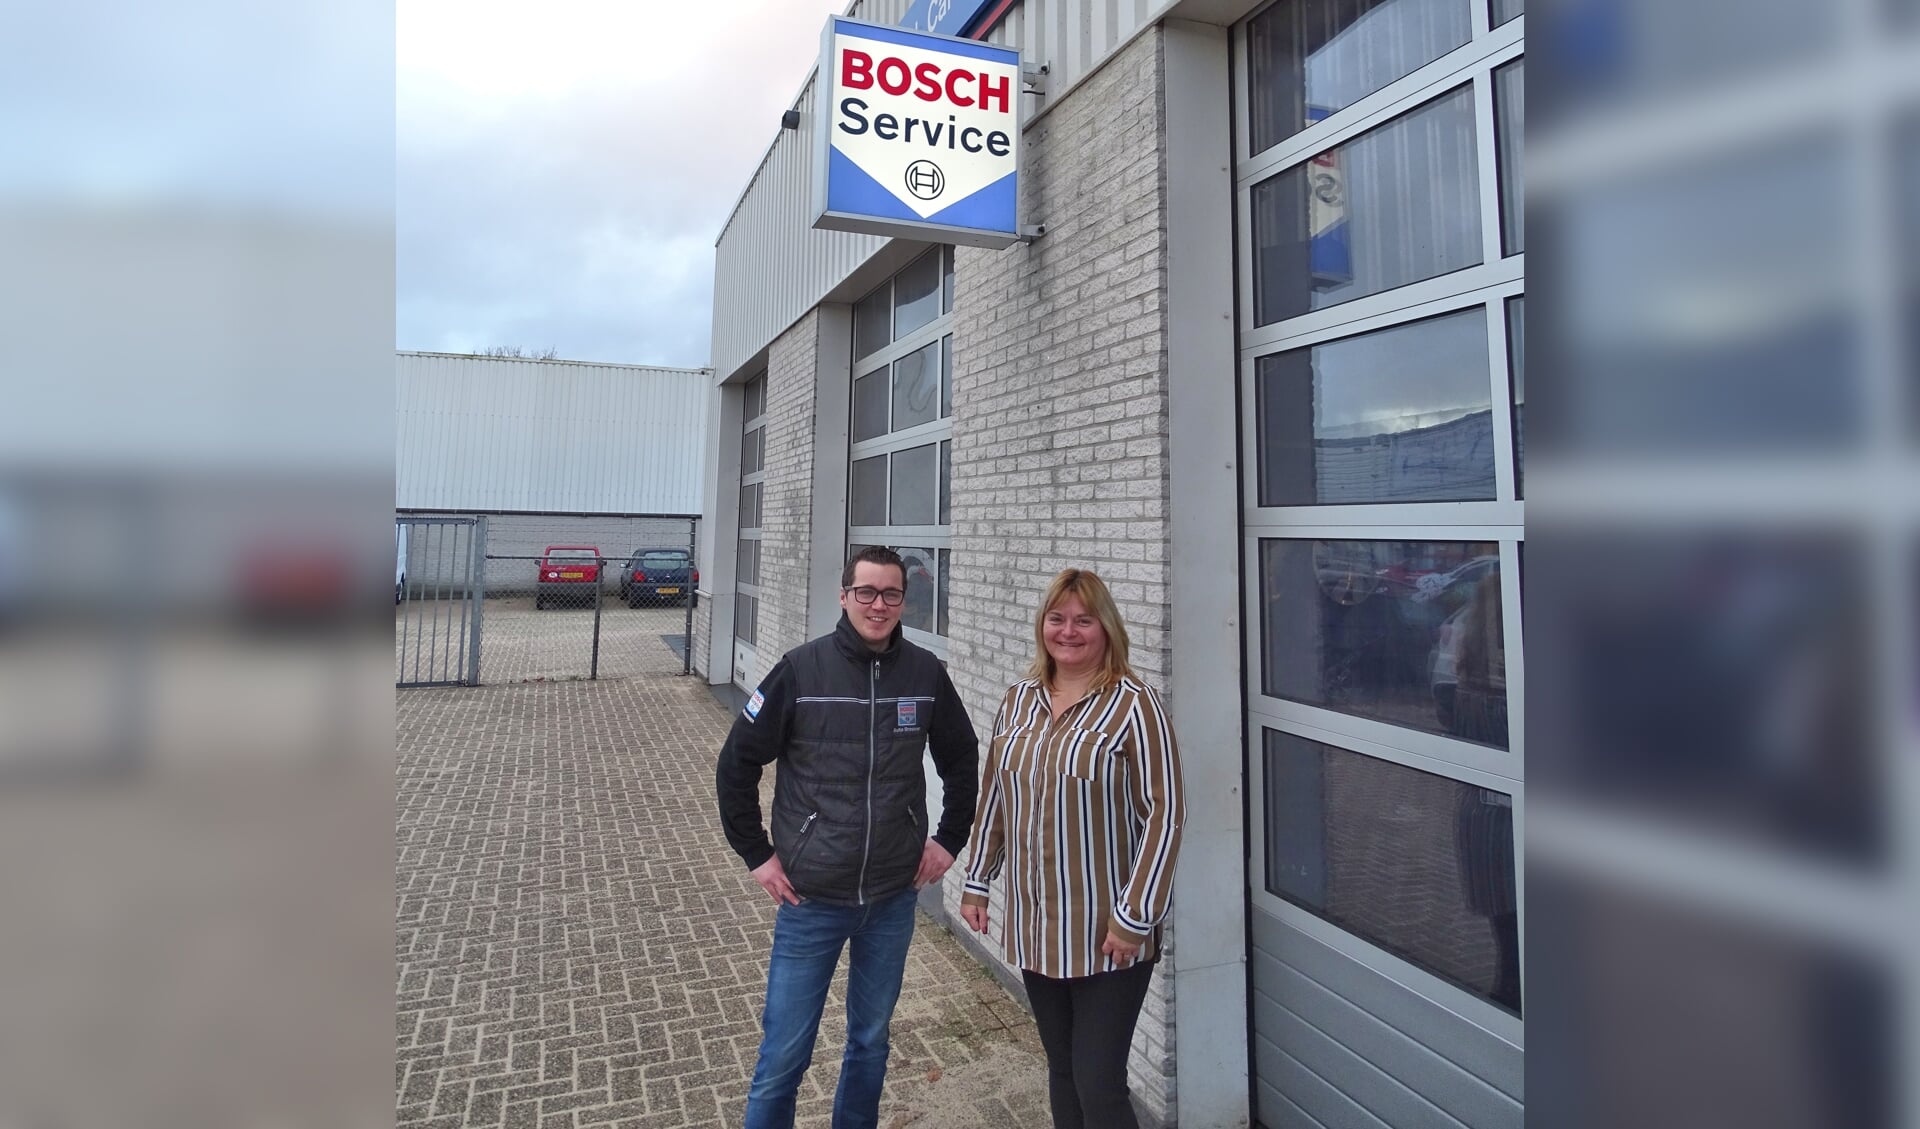  Nieuwe eigenaar Patrick Verhoef (r) en Ingrid van der Linden